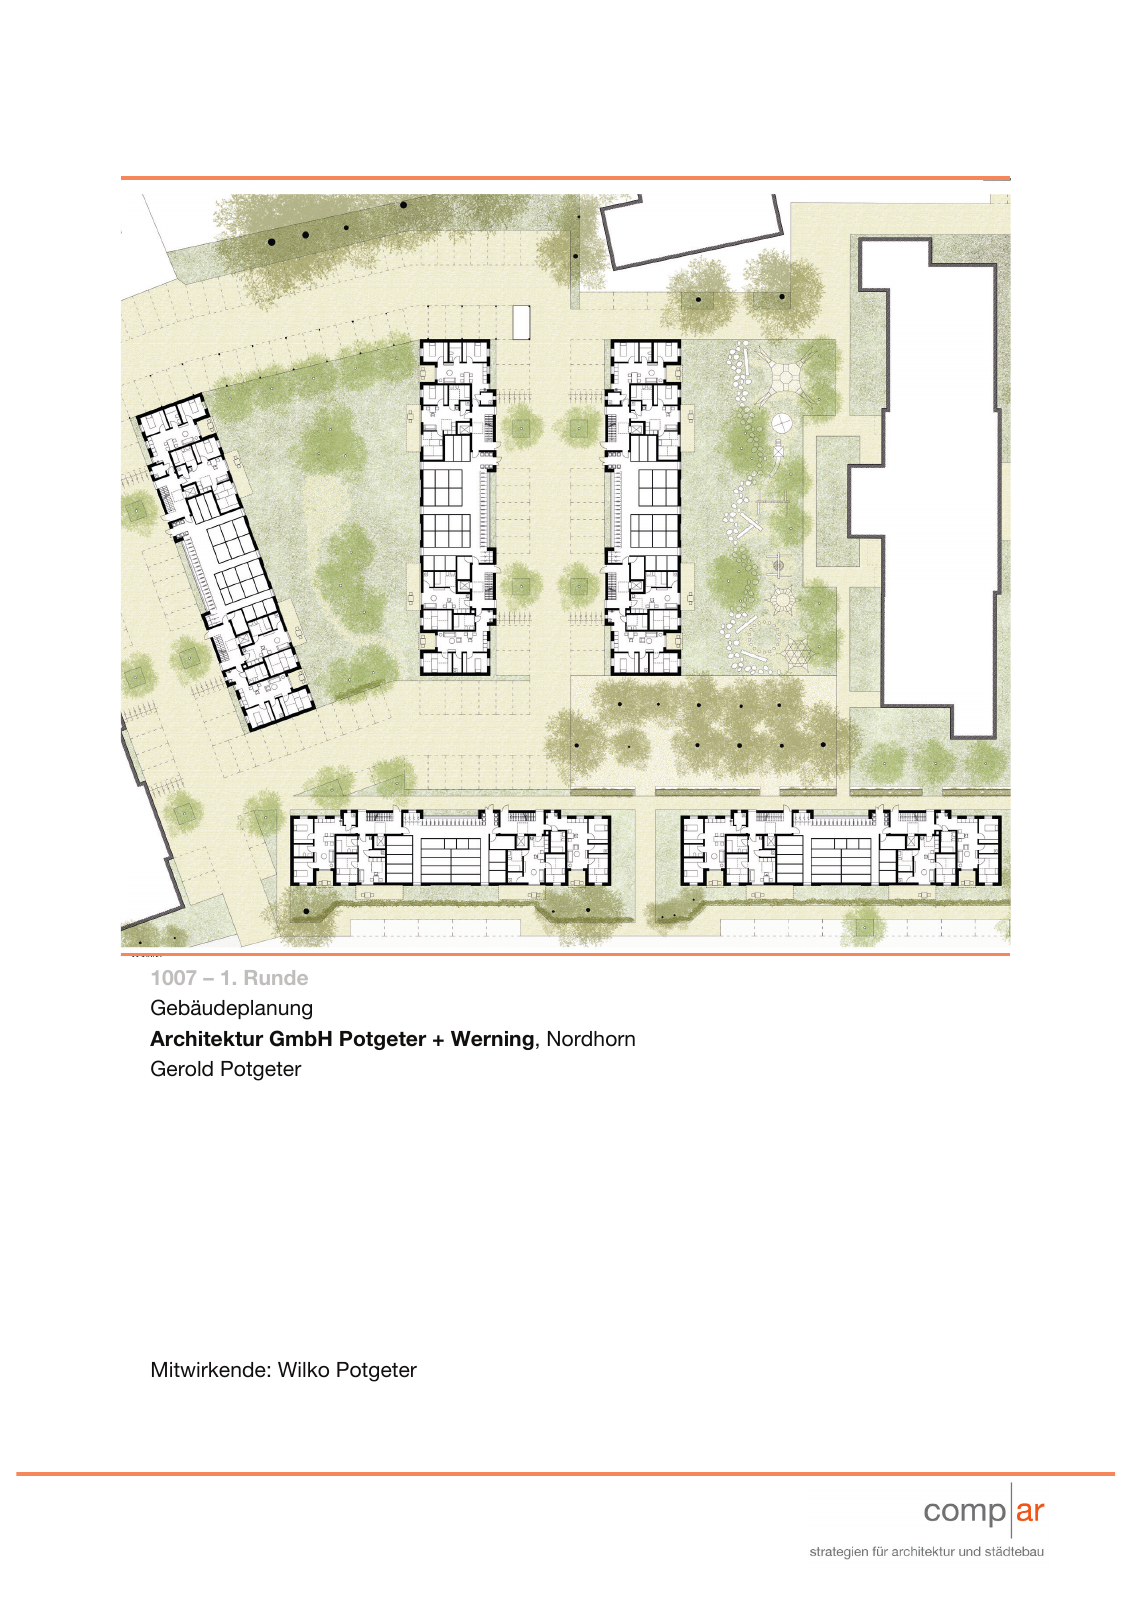 Vorschau Neubau von 100 Wohneinheiten [Nordhorn] Seite 45